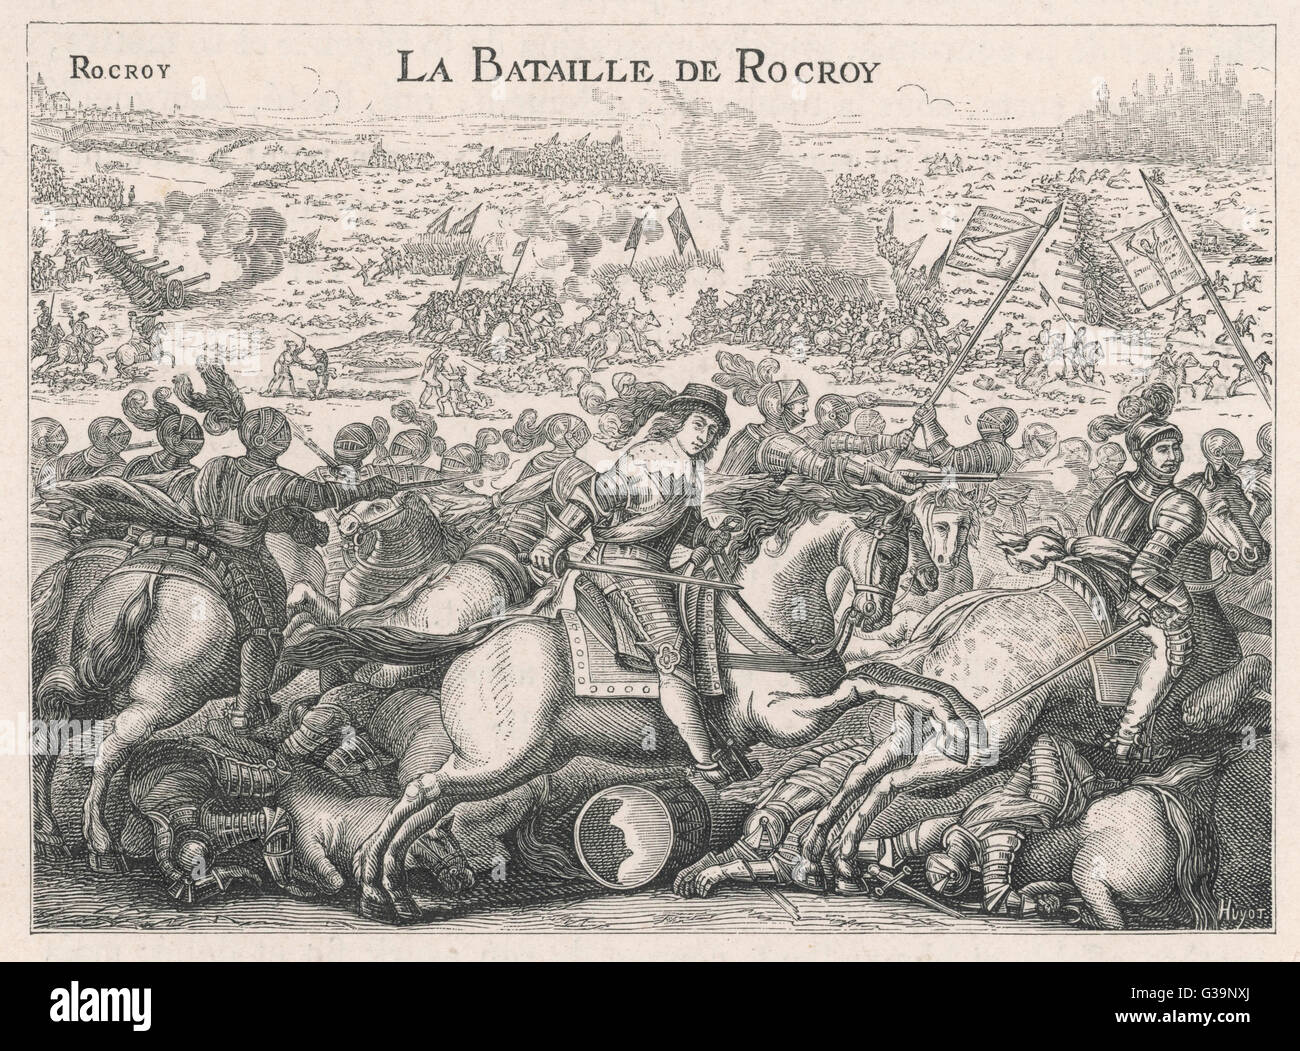 Bataille de Rocroi Conde à l'encontre de l'espagnol avec de lourdes pertes, un événement qui marque le déclin de la puissance militaire espagnol Date : 19 mai 1643 Banque D'Images